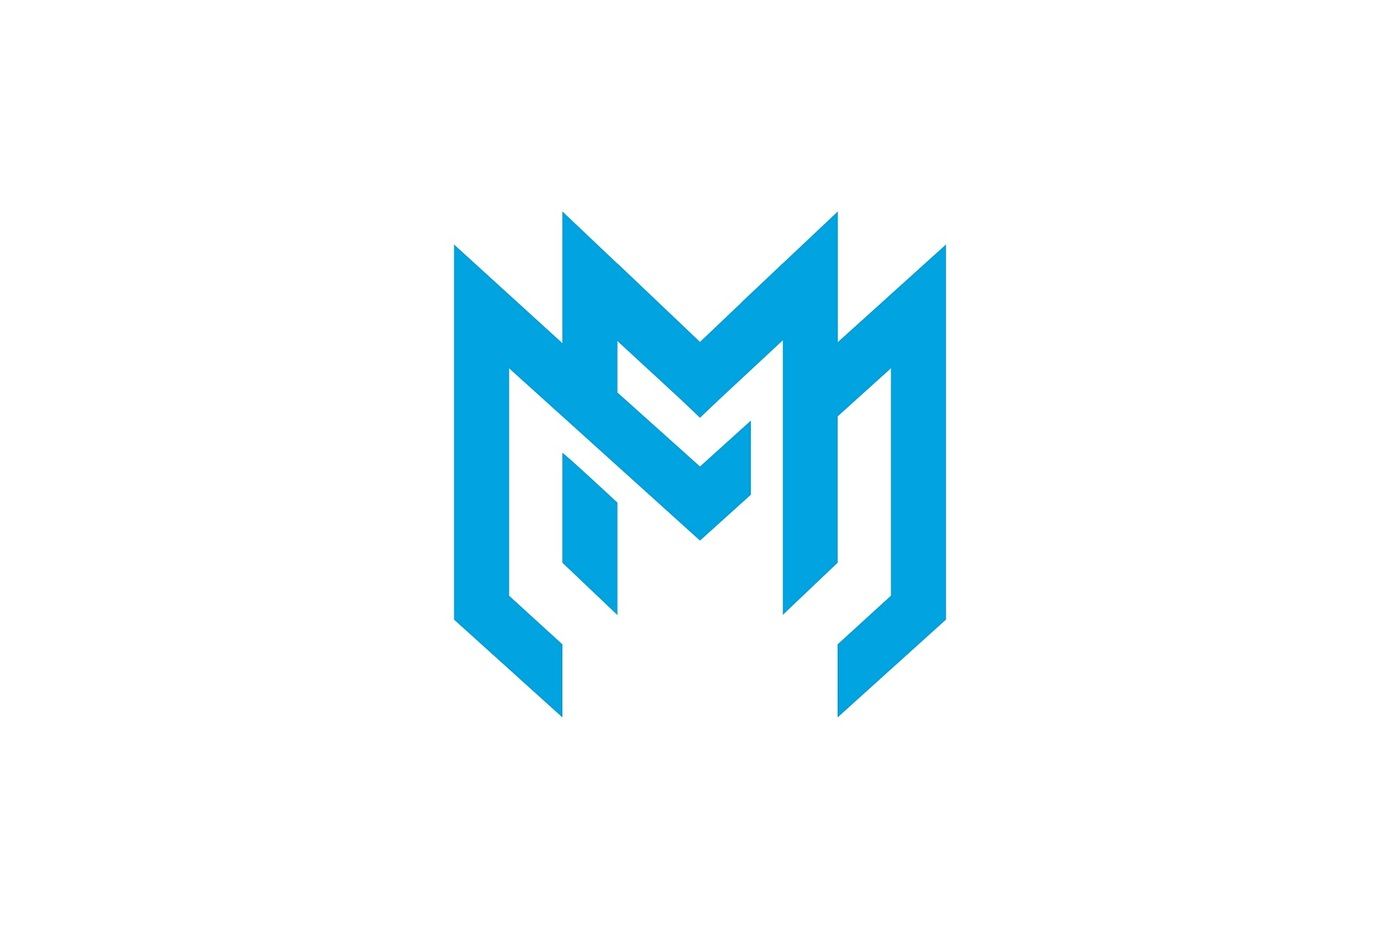 Premium Vector  Mm monogram logo design